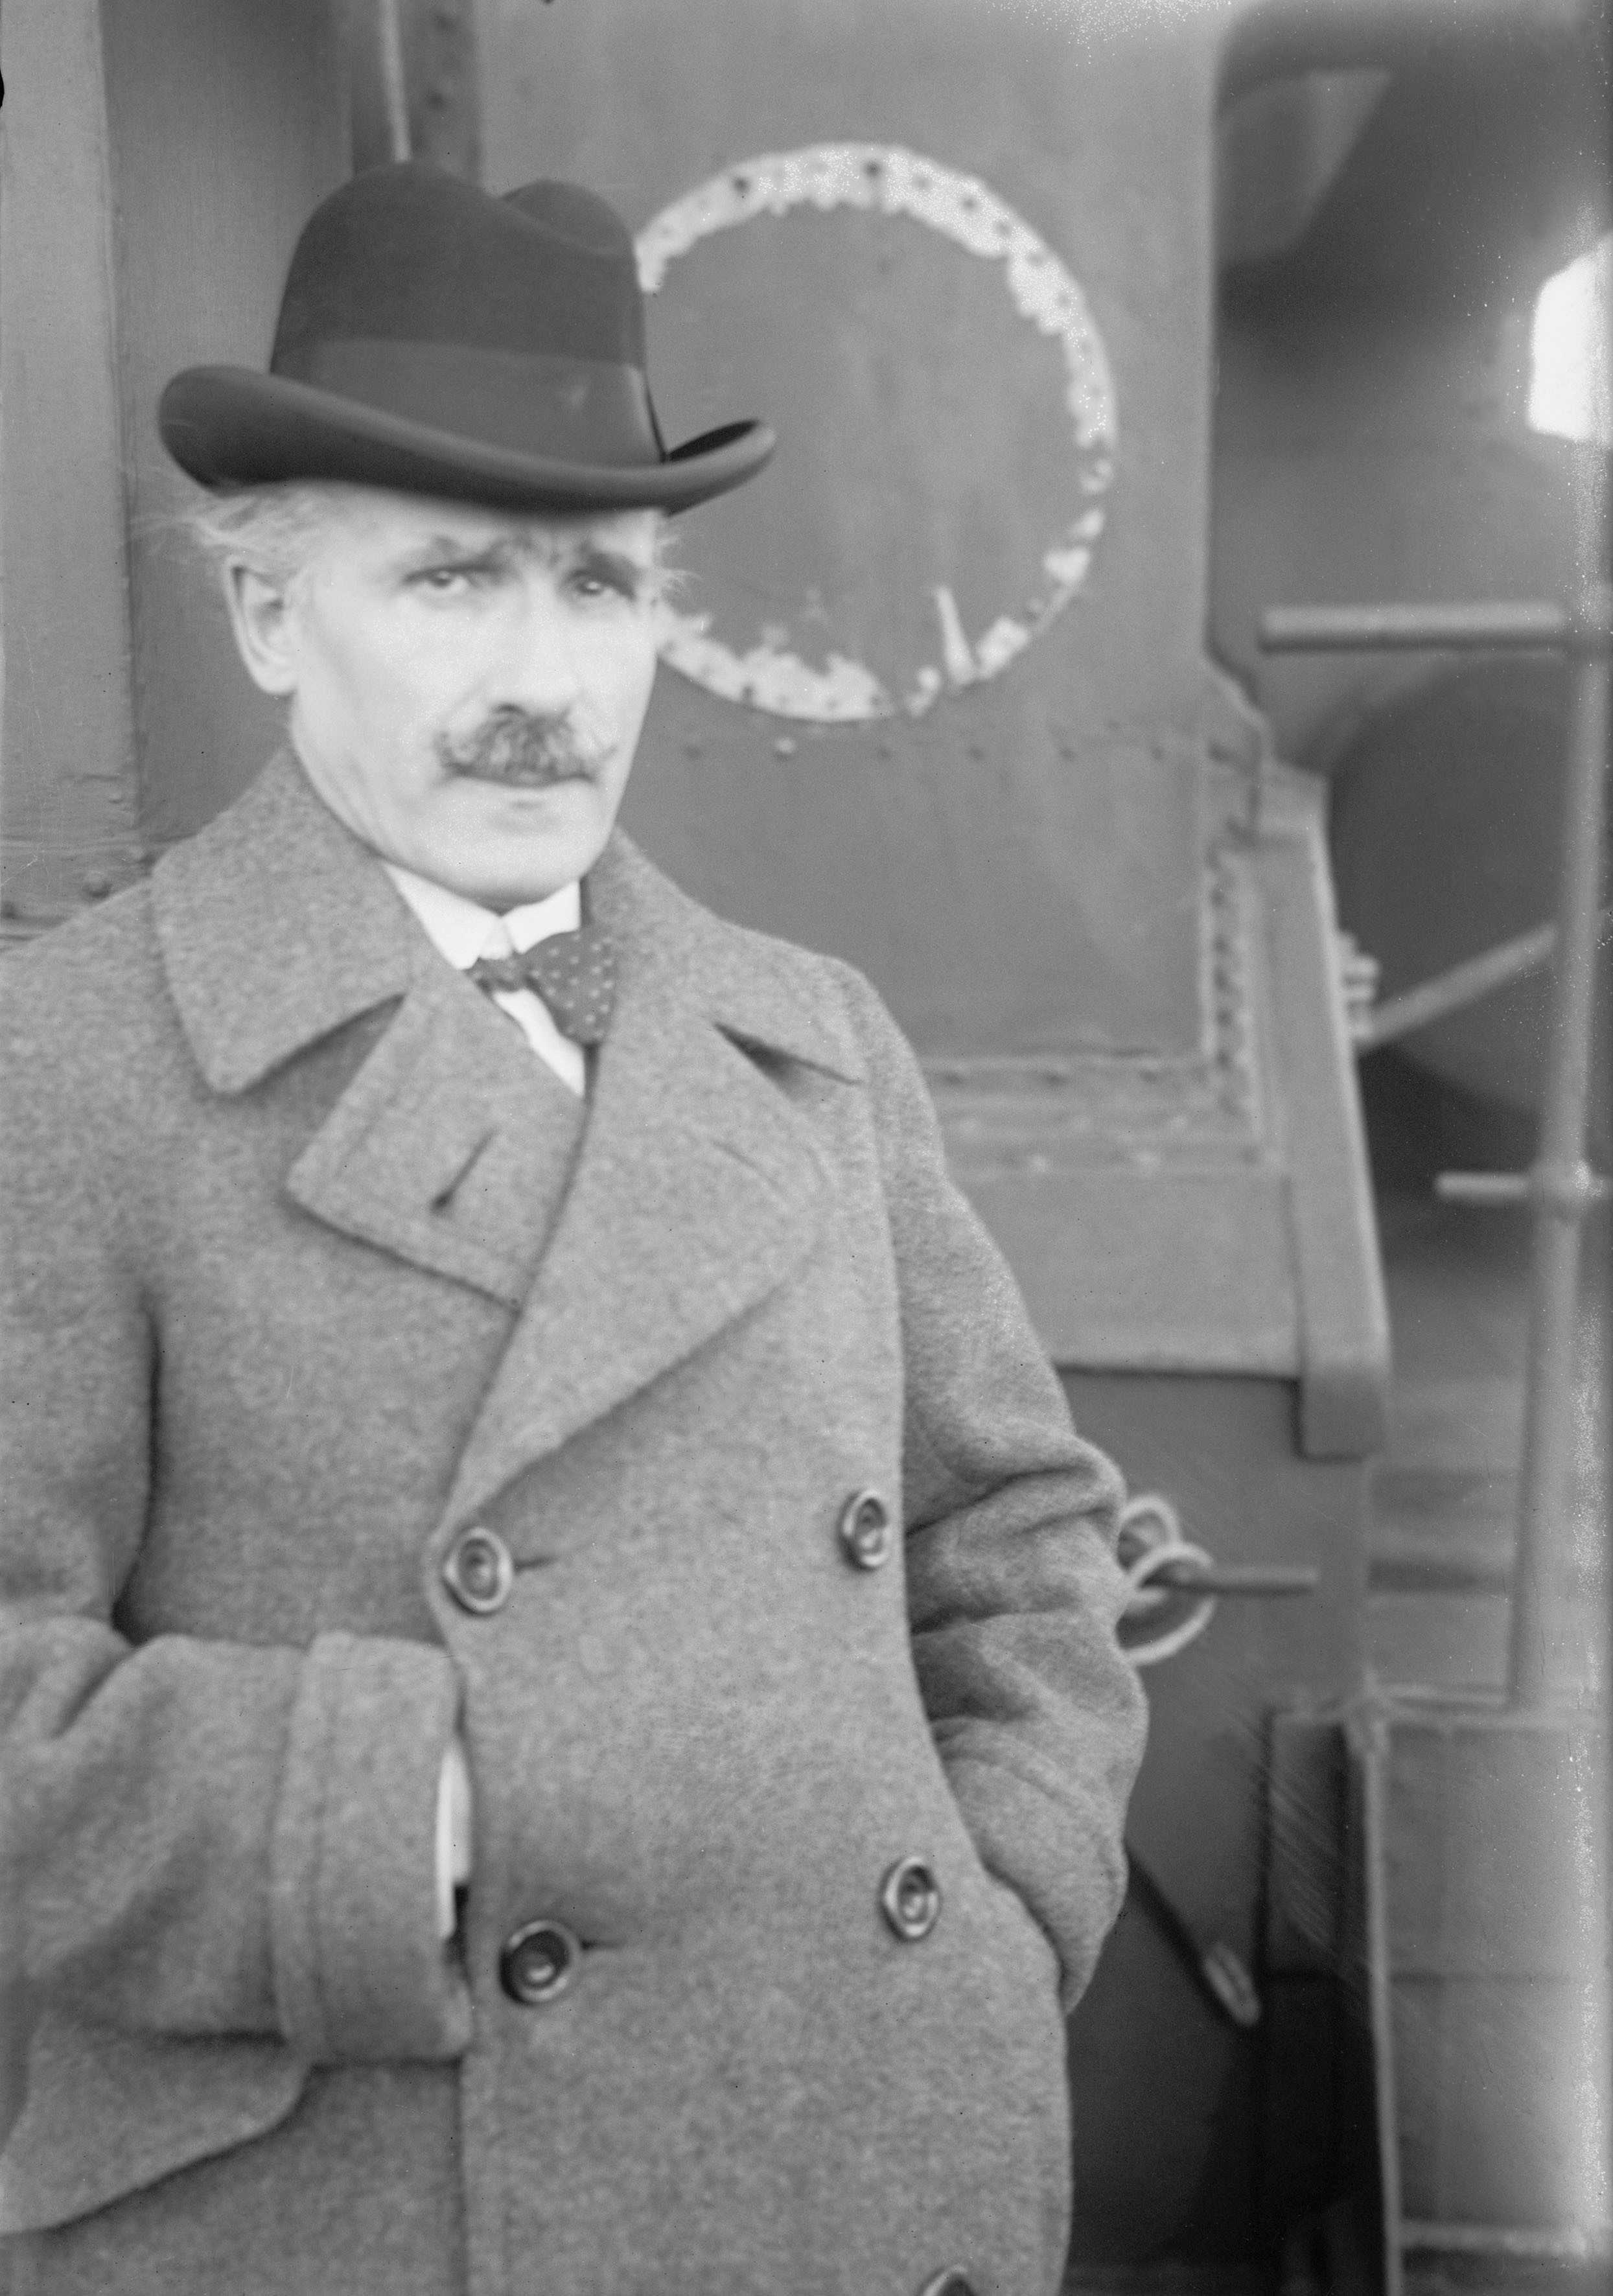 1922, 7 gennaio. Arturo Toscanini a bordo di una nave, durante una tournée.